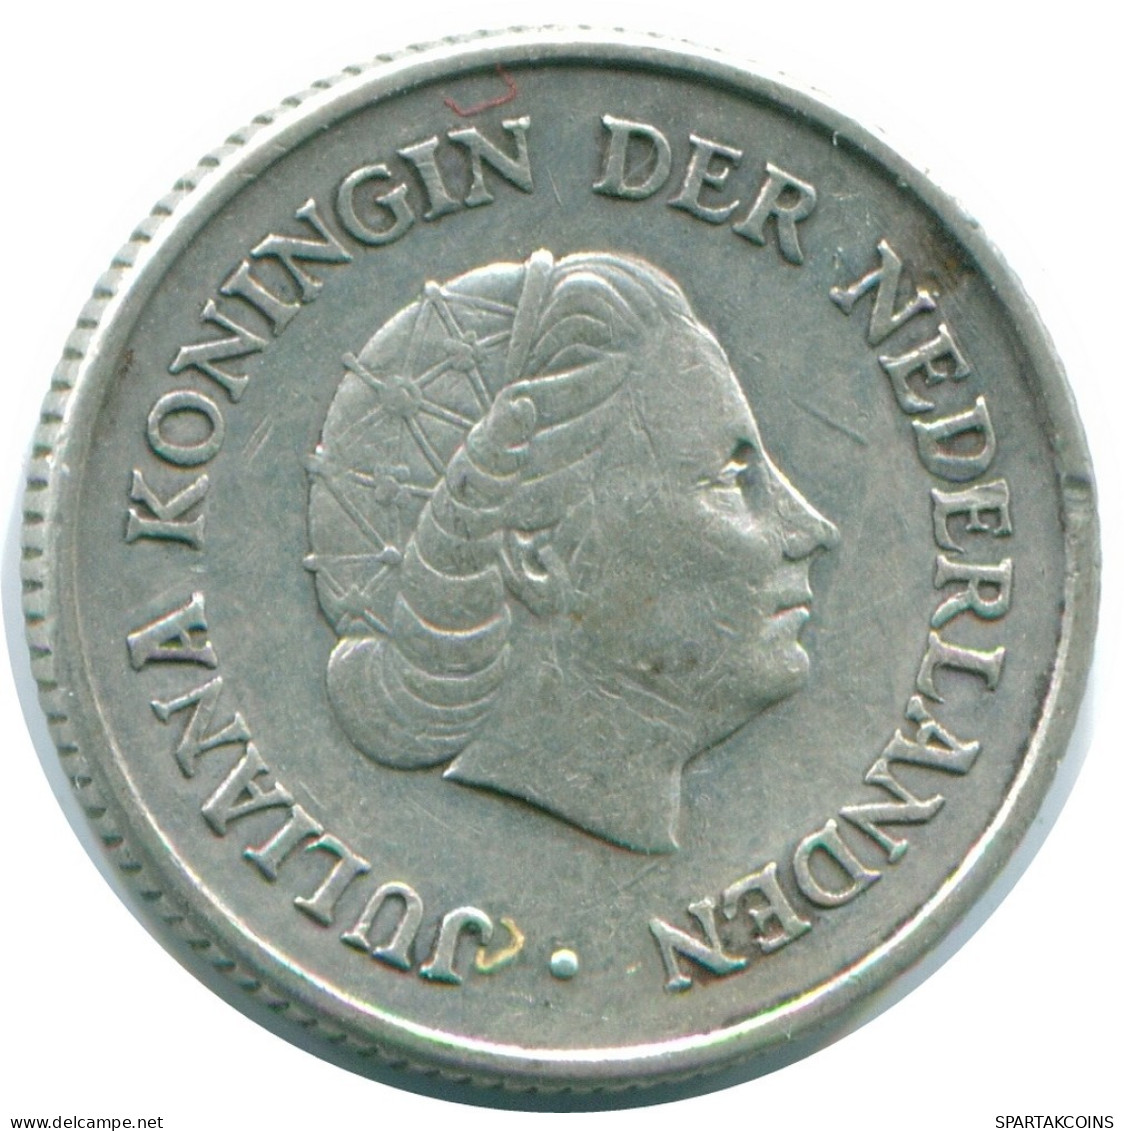 1/4 GULDEN 1960 NIEDERLÄNDISCHE ANTILLEN SILBER Koloniale Münze #NL11054.4.D.A - Antillas Neerlandesas